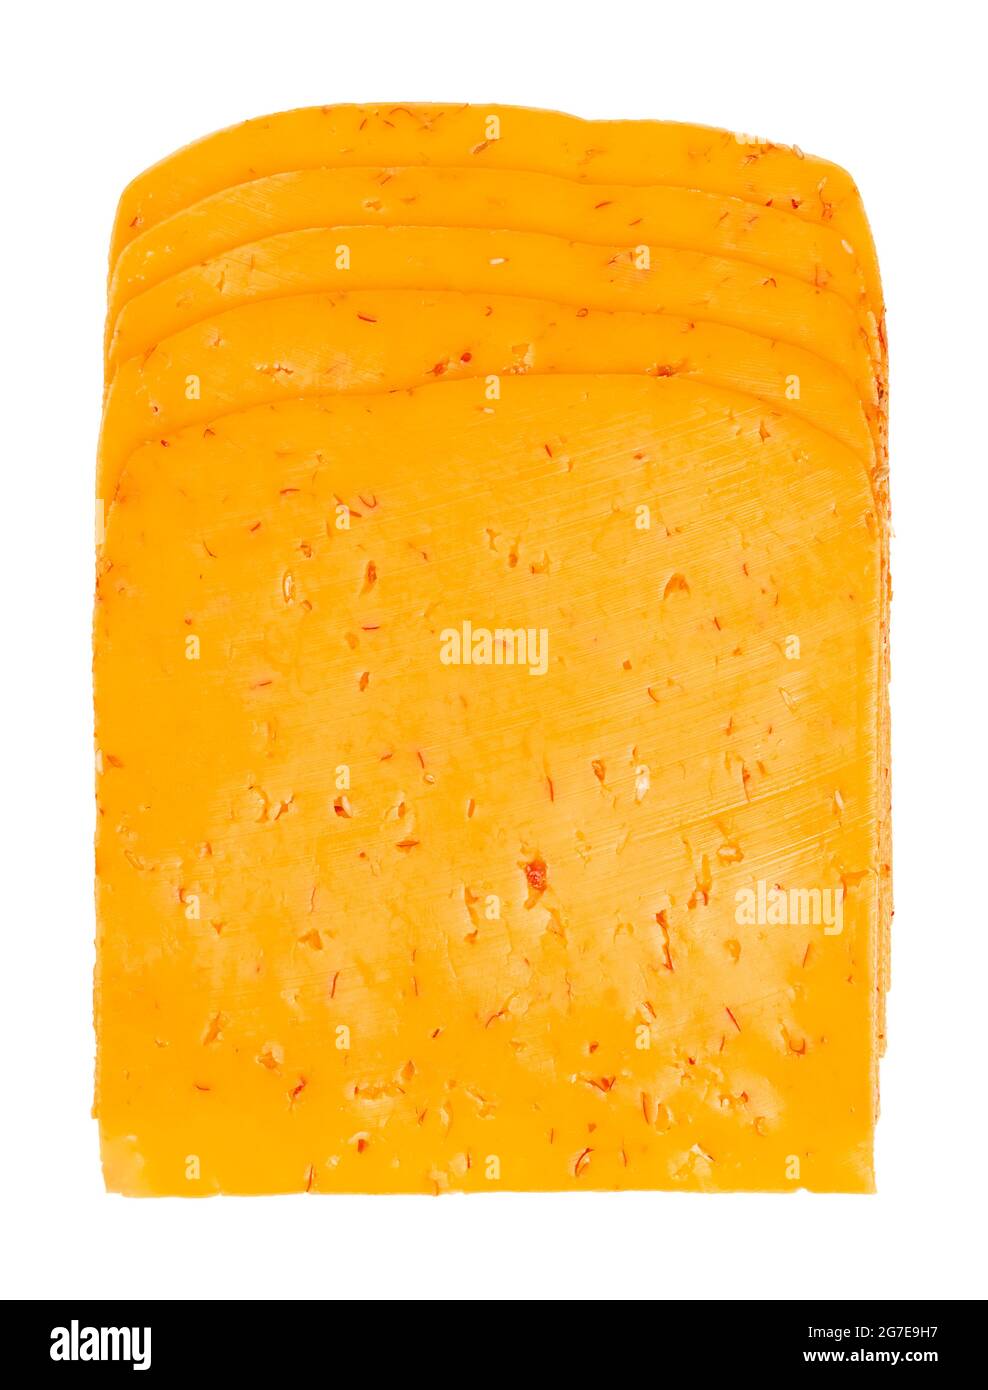 Tranches de fromage Chili. Pile de cheddar tranché pour cheeseburgers, faite de lait pasteurisé et de flocons de piments rouges. Produit laitier. Couleur orange. Banque D'Images